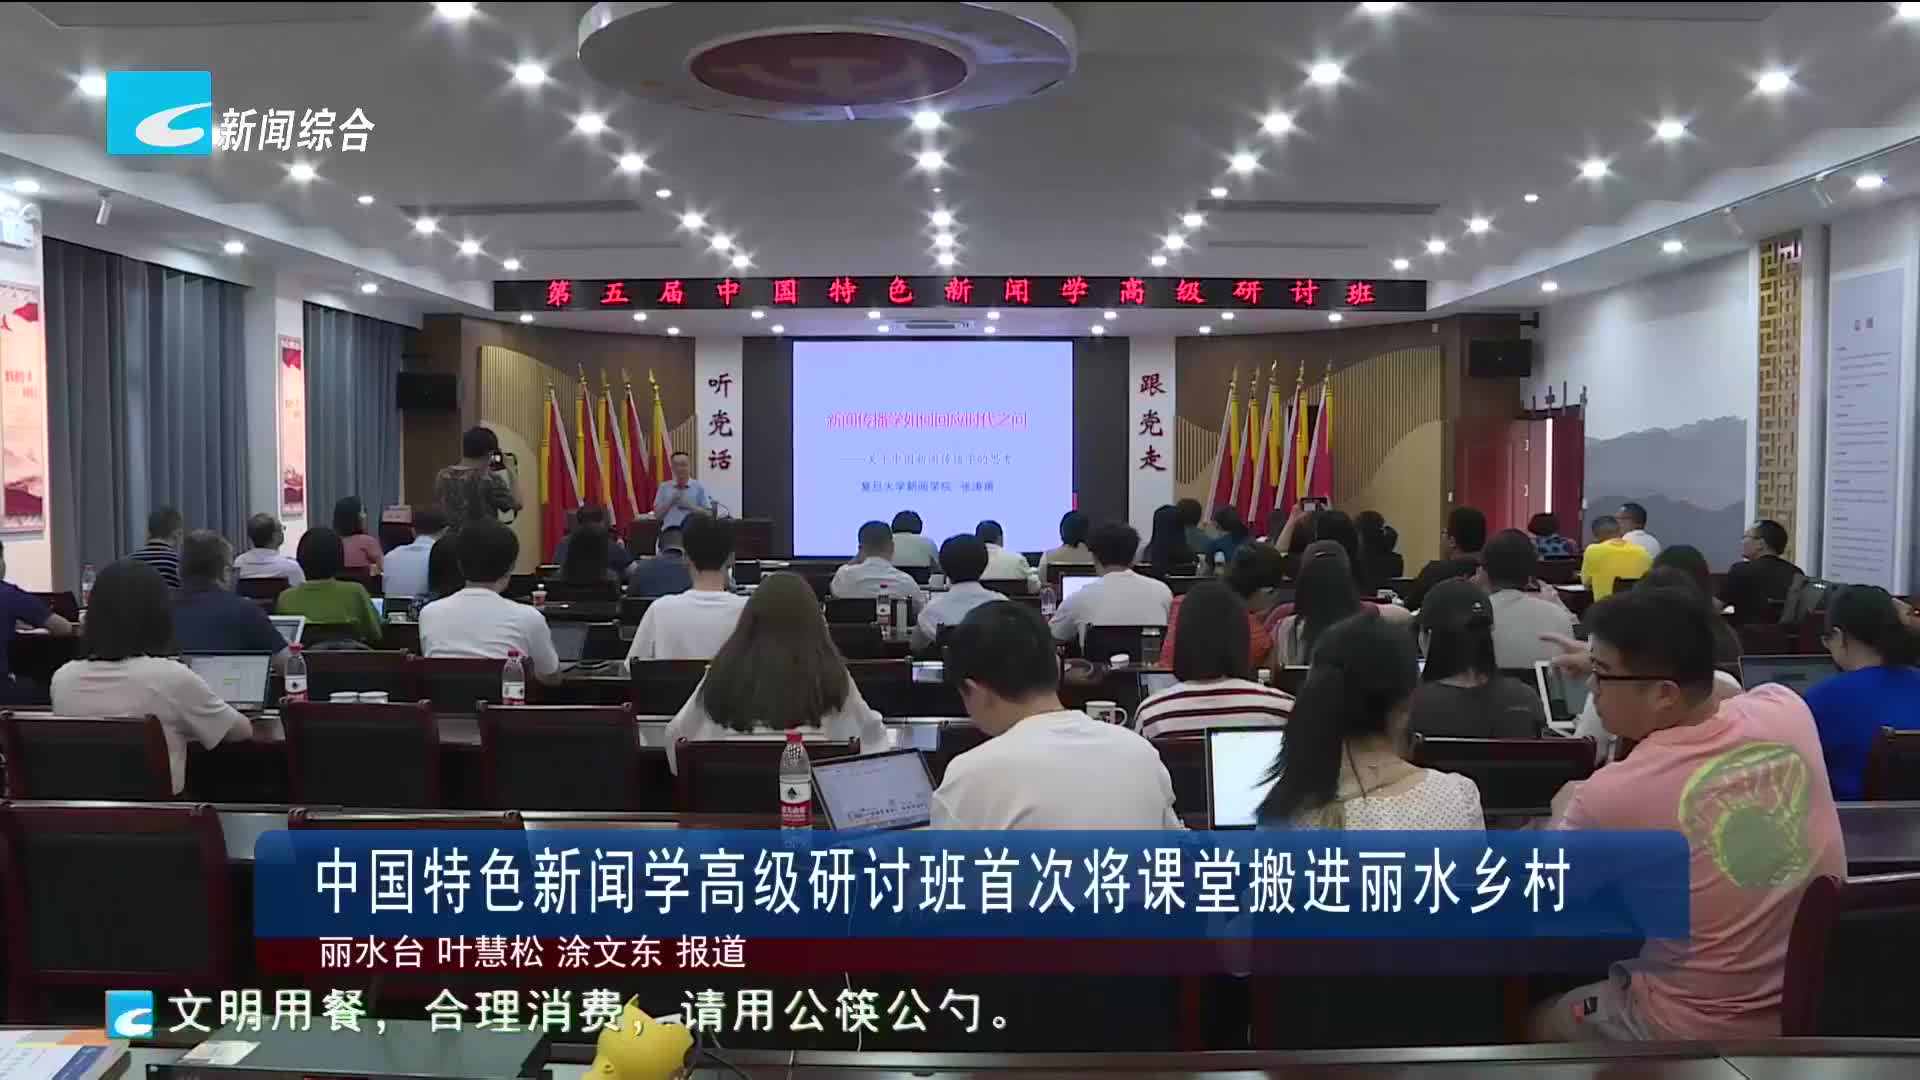 中国特色新闻学高级研讨班首次将课堂搬进丽水乡村